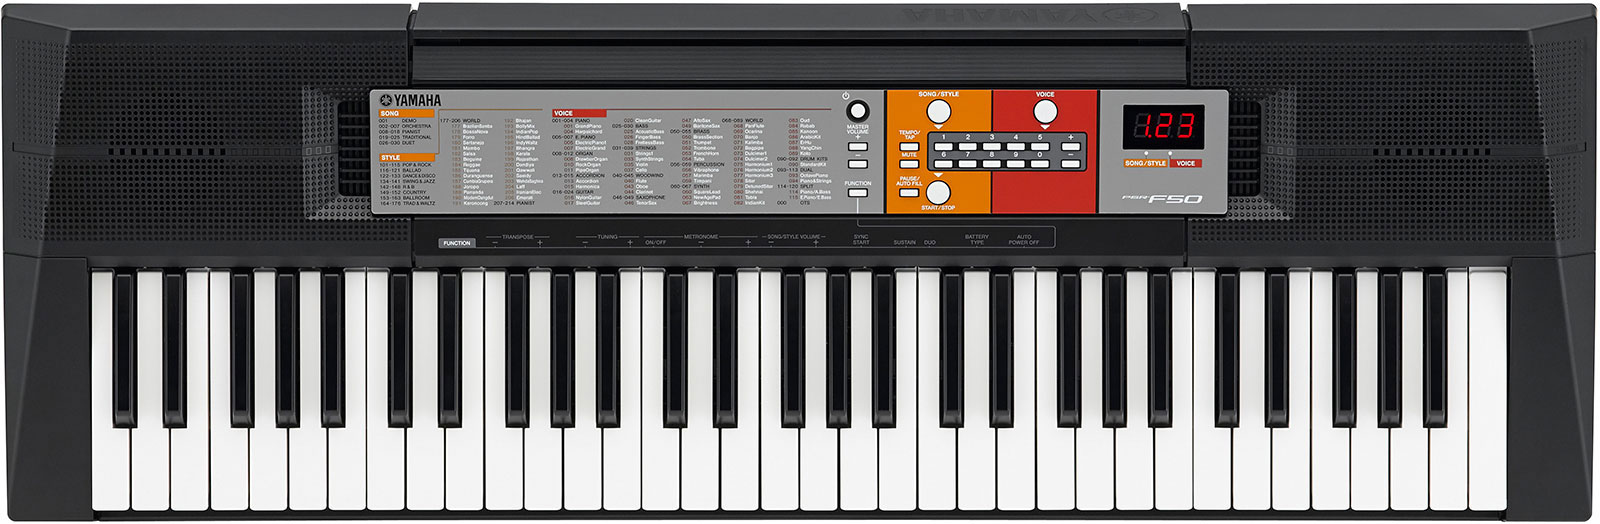 Portable keyboard Yamaha PSR-F50